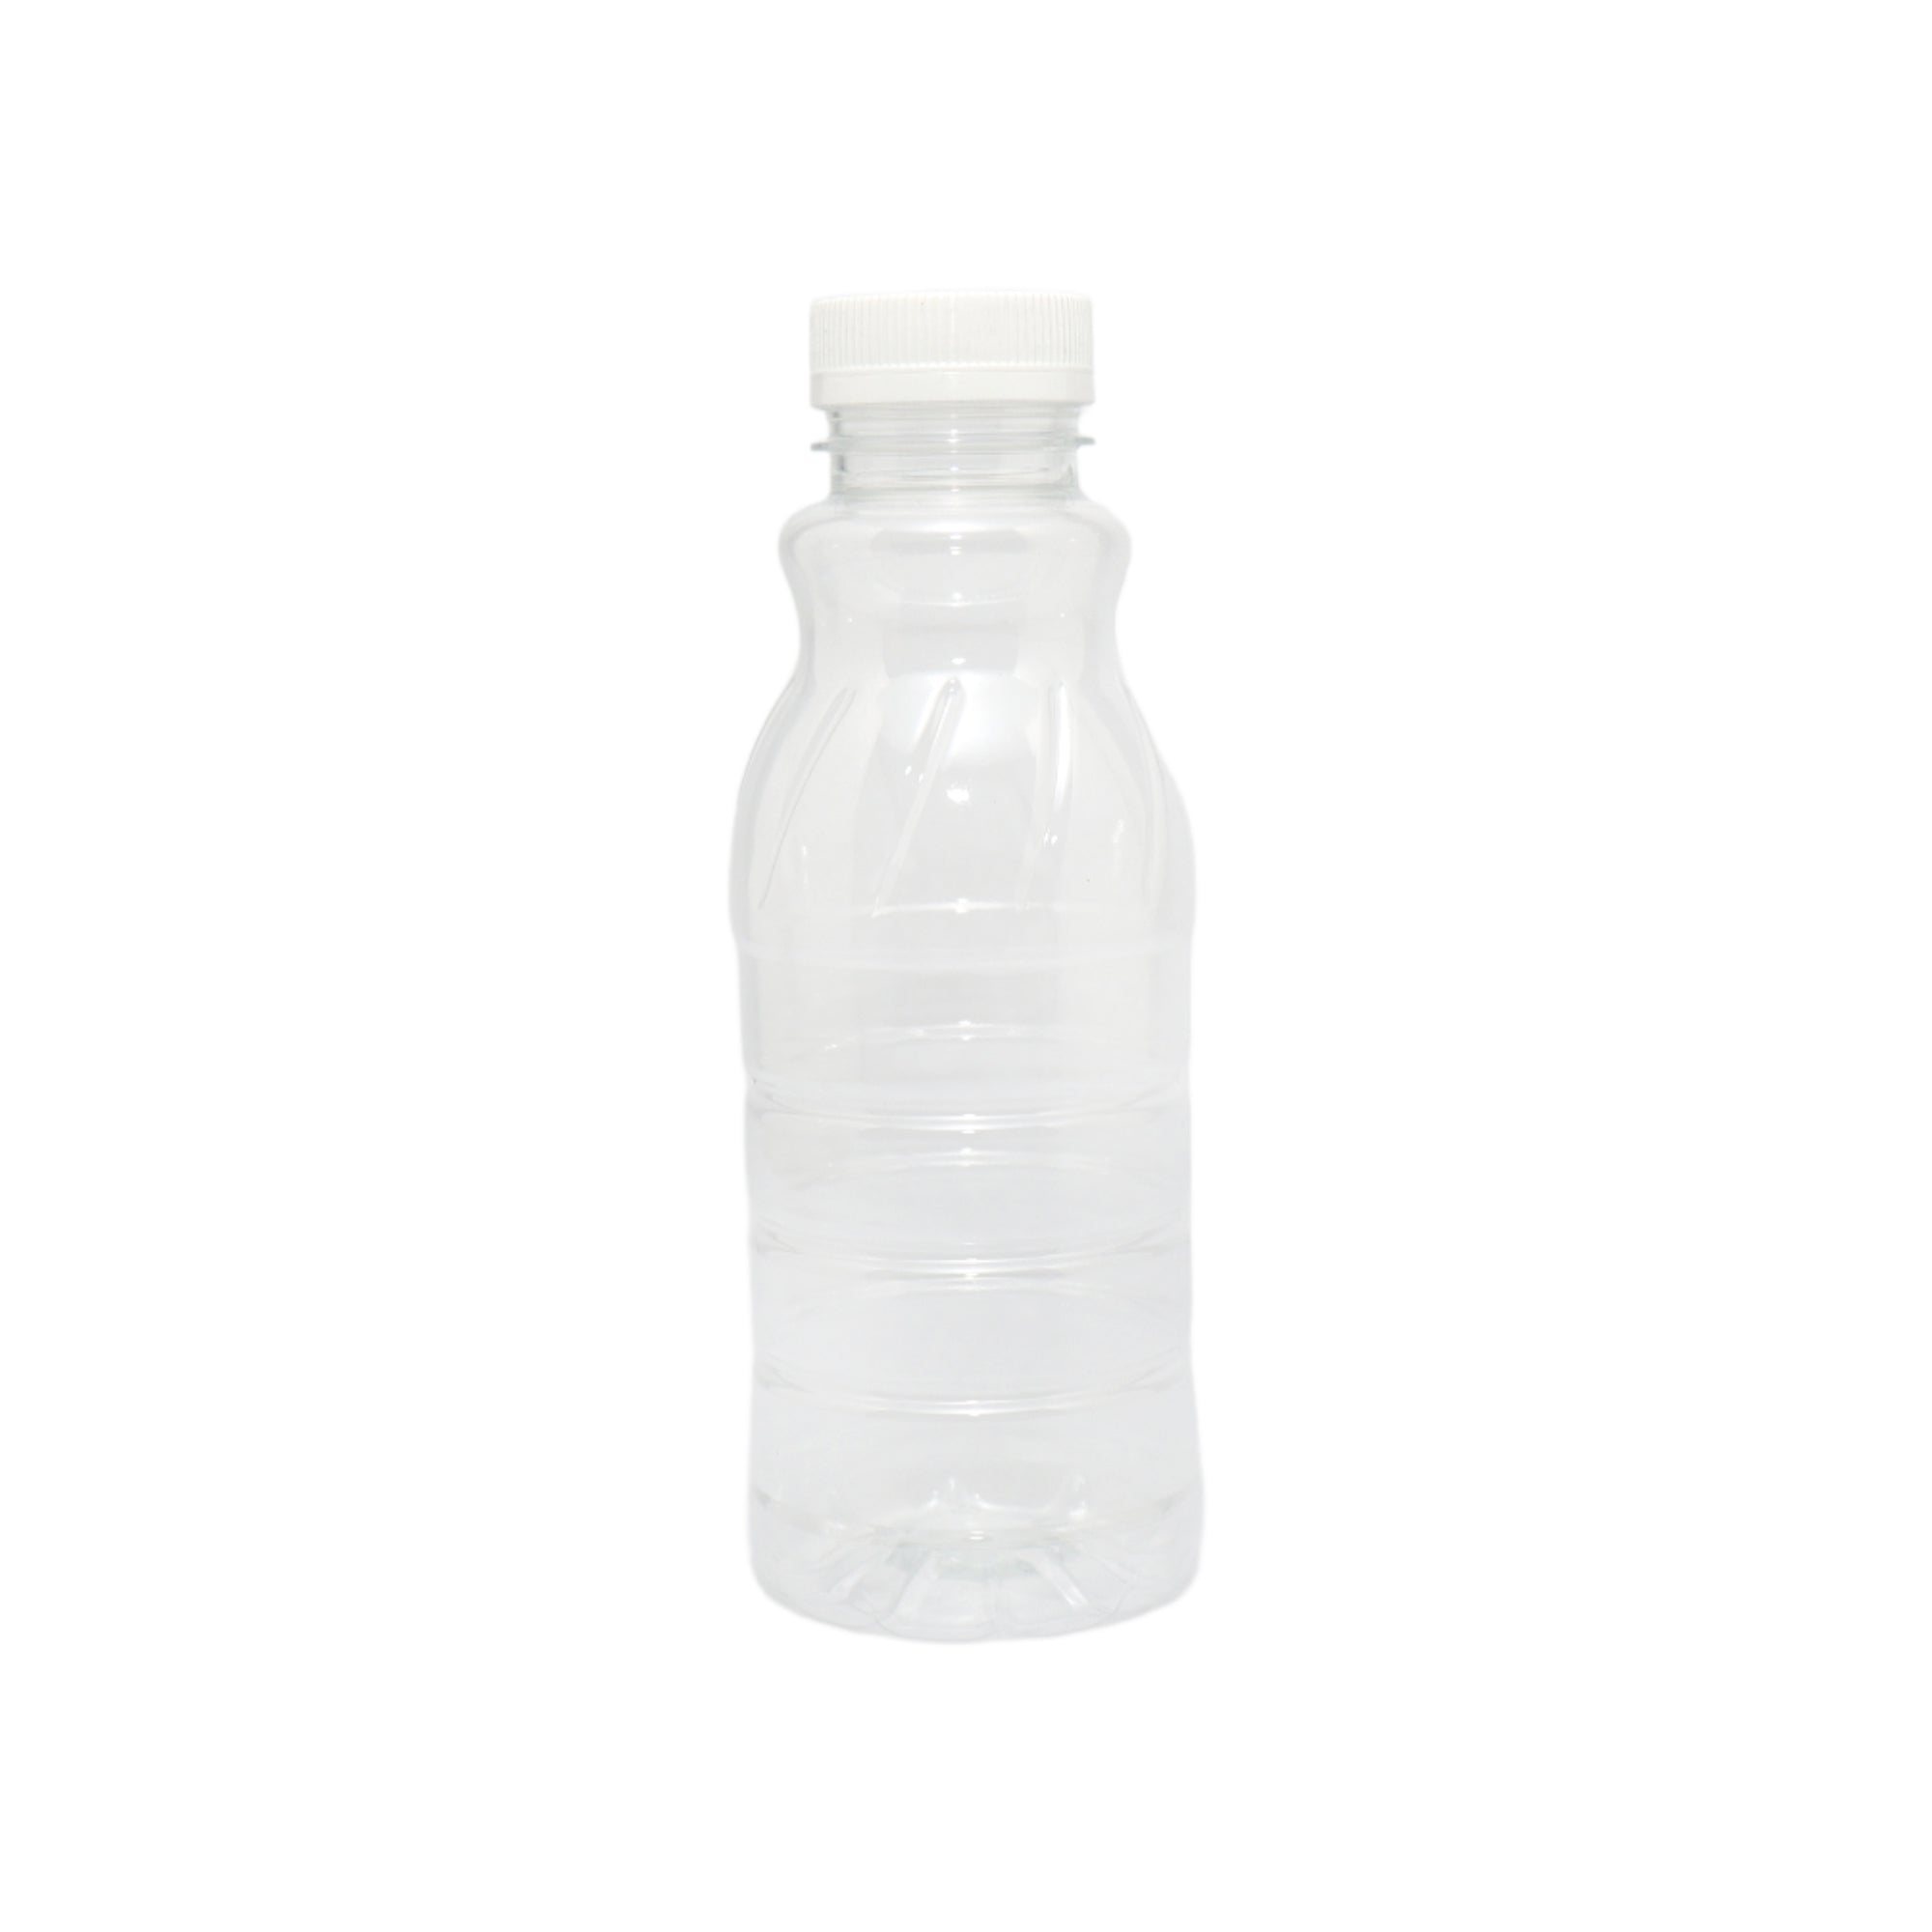 500ml PET Plastic Bottle Grip Design With Cap Each